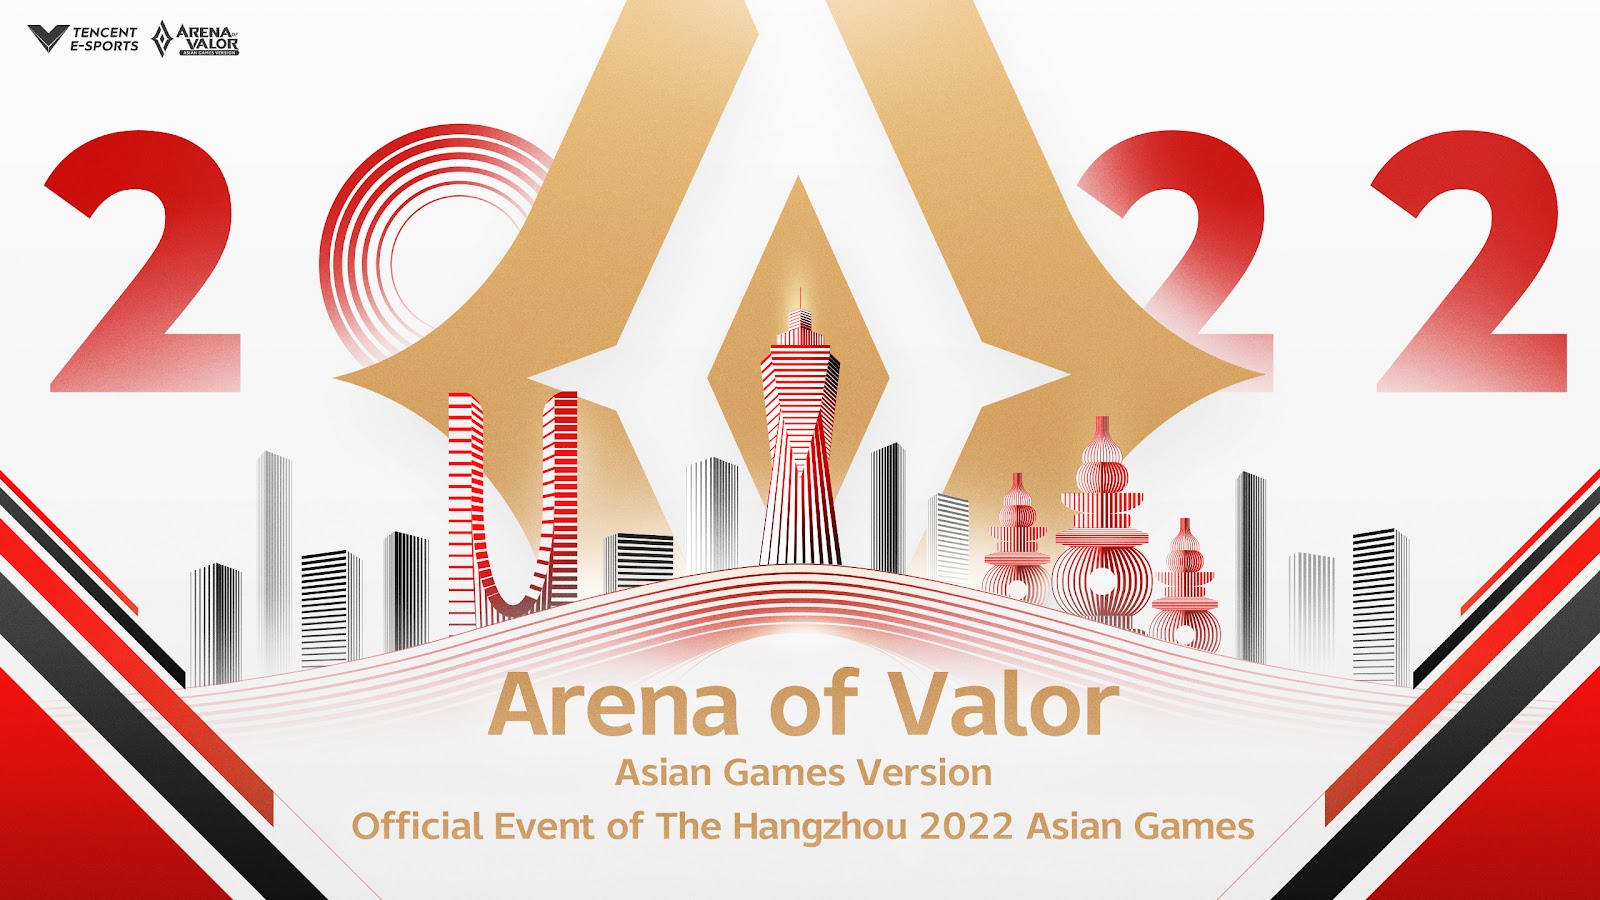 Liên Quân chính thức trở thành môn thi đấu tranh huy chương tại Asian Games 2022